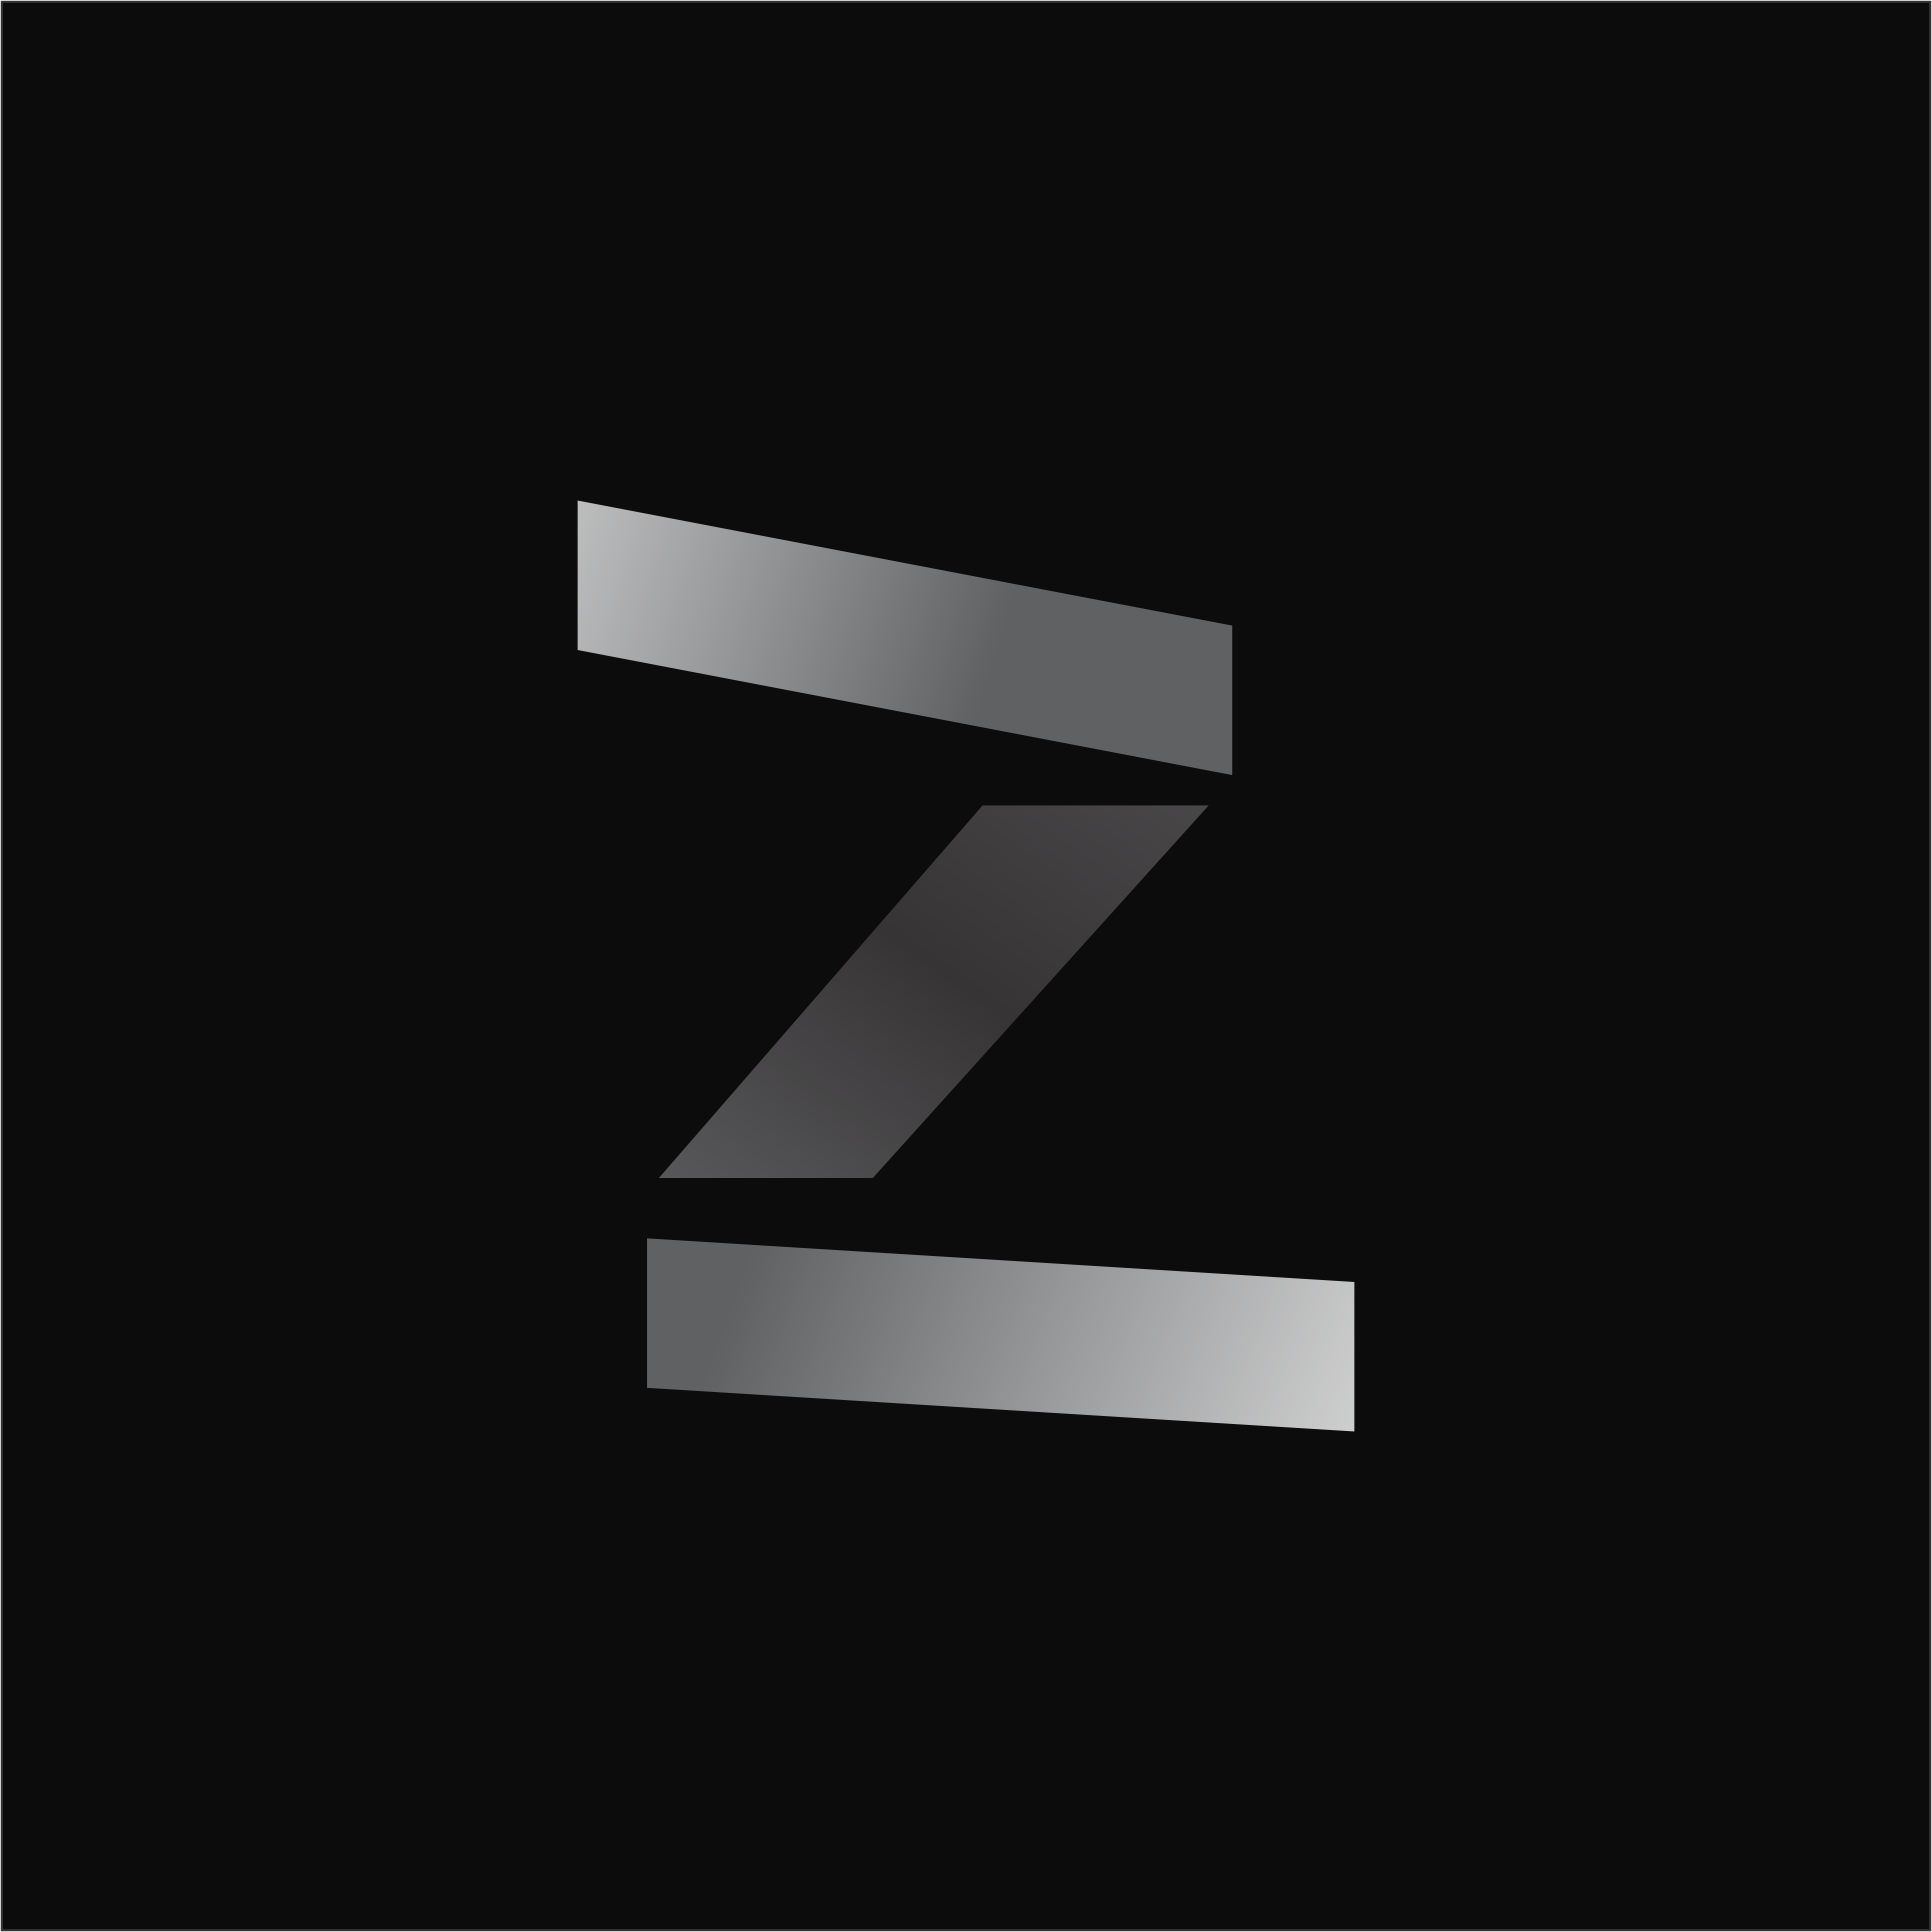 Zkc-Art Profile Picture